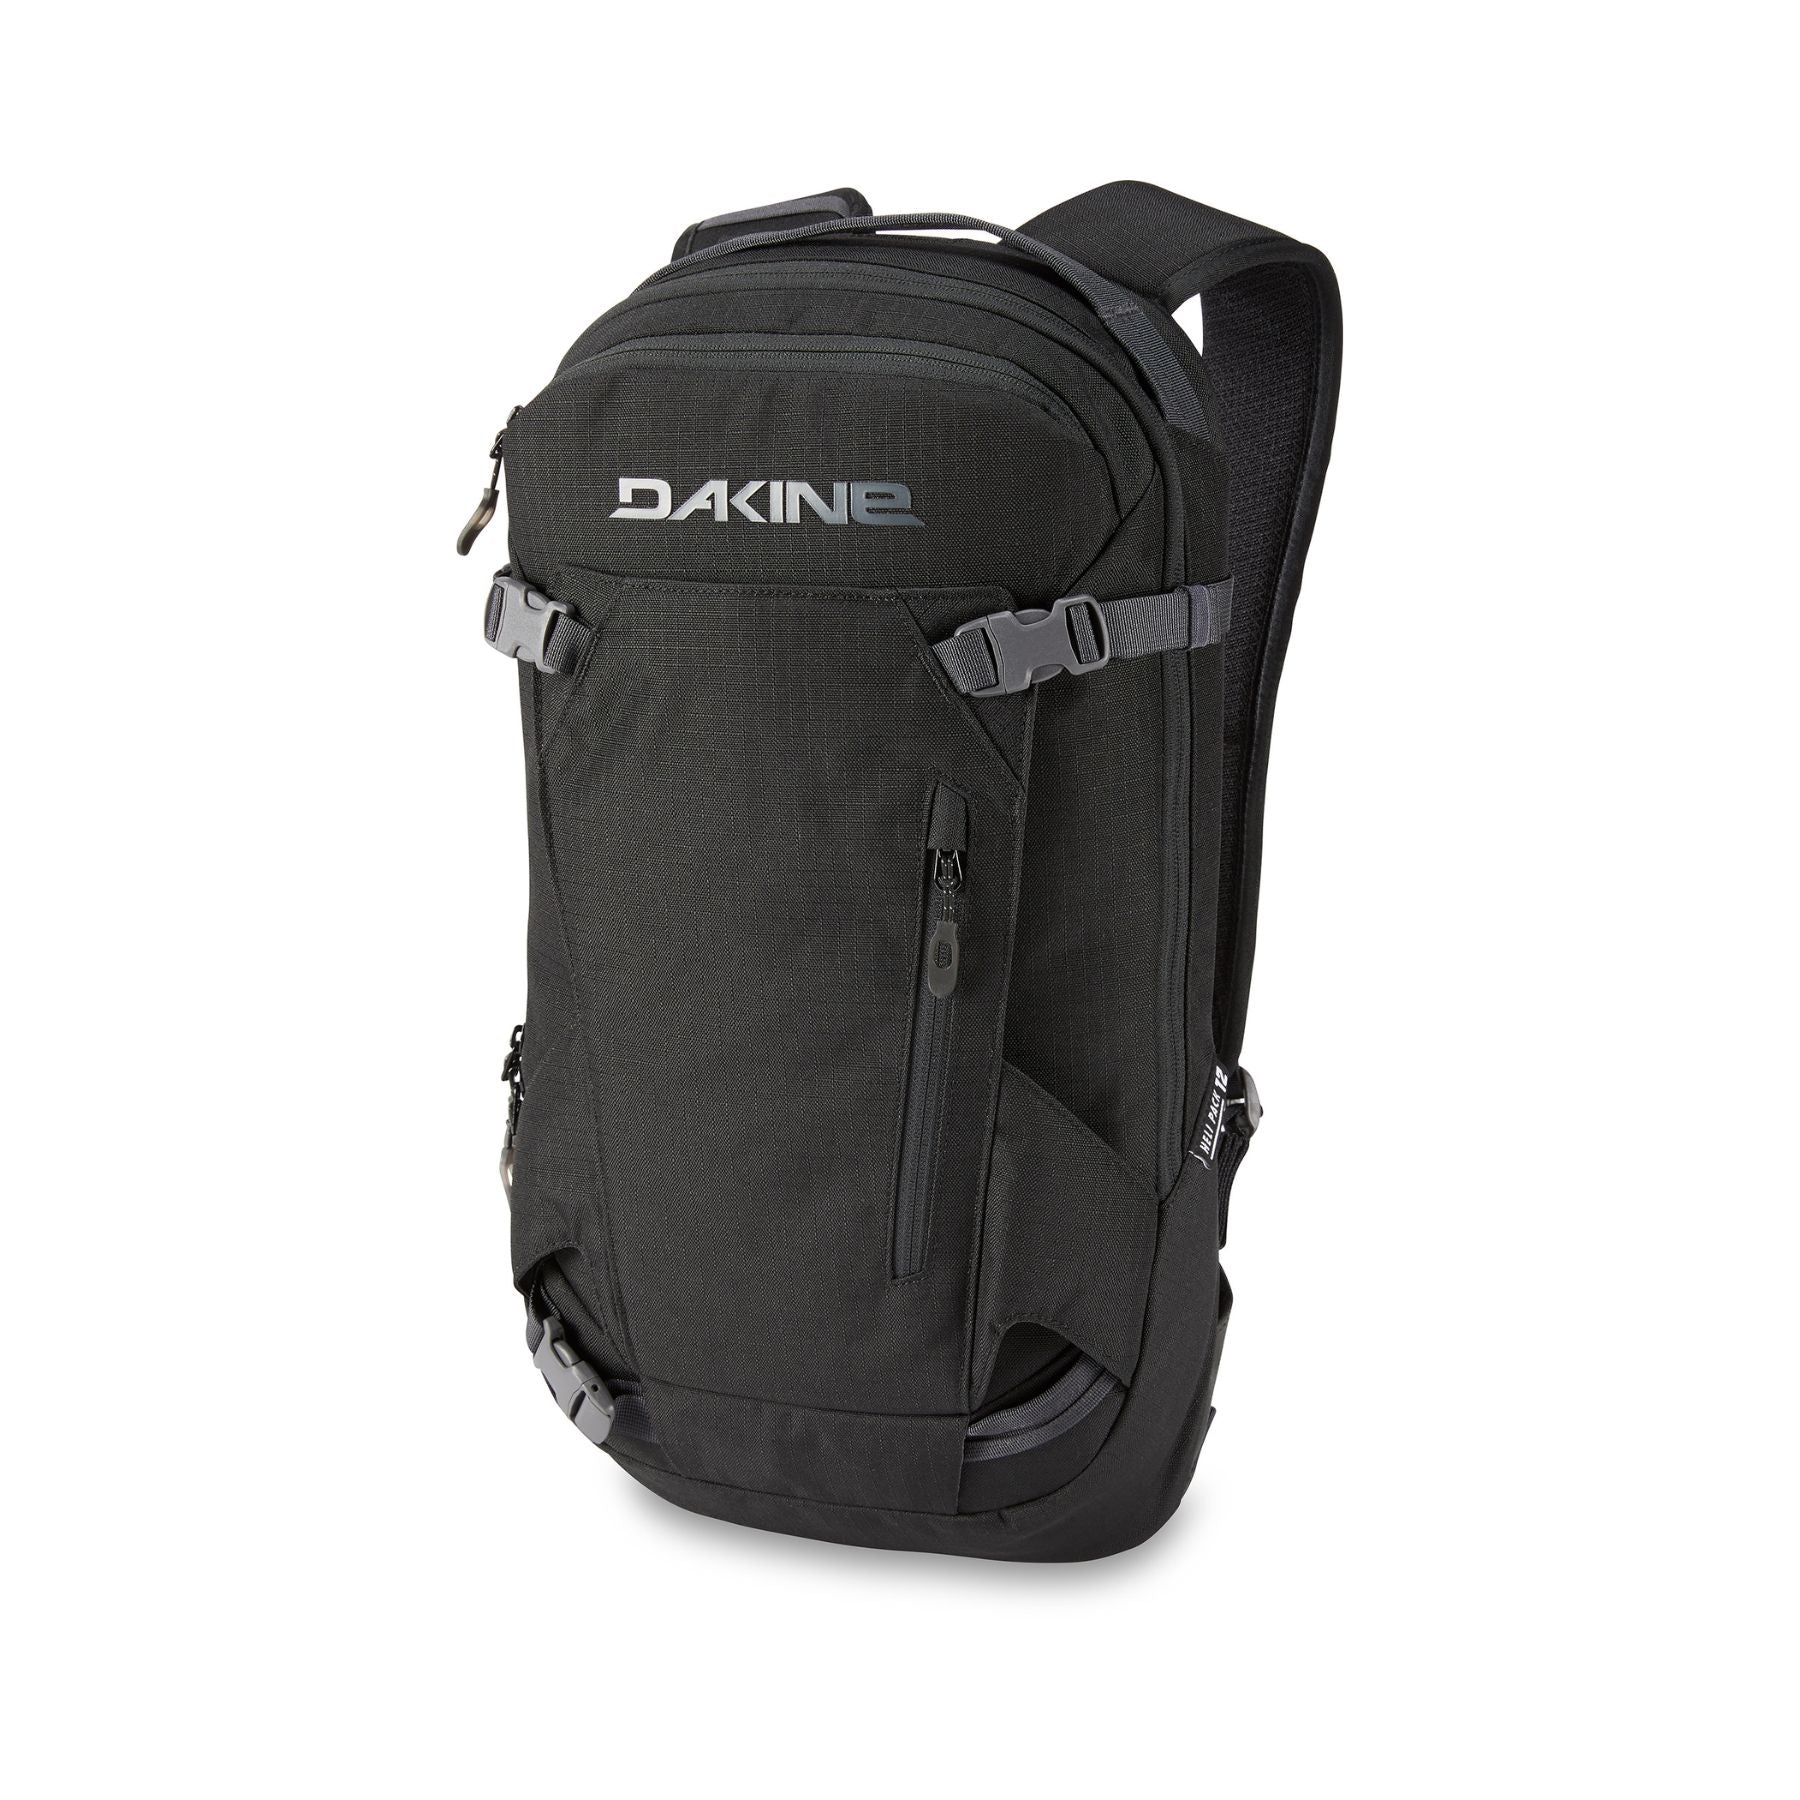 Dakine Heli Pack 12L Backpack in Black